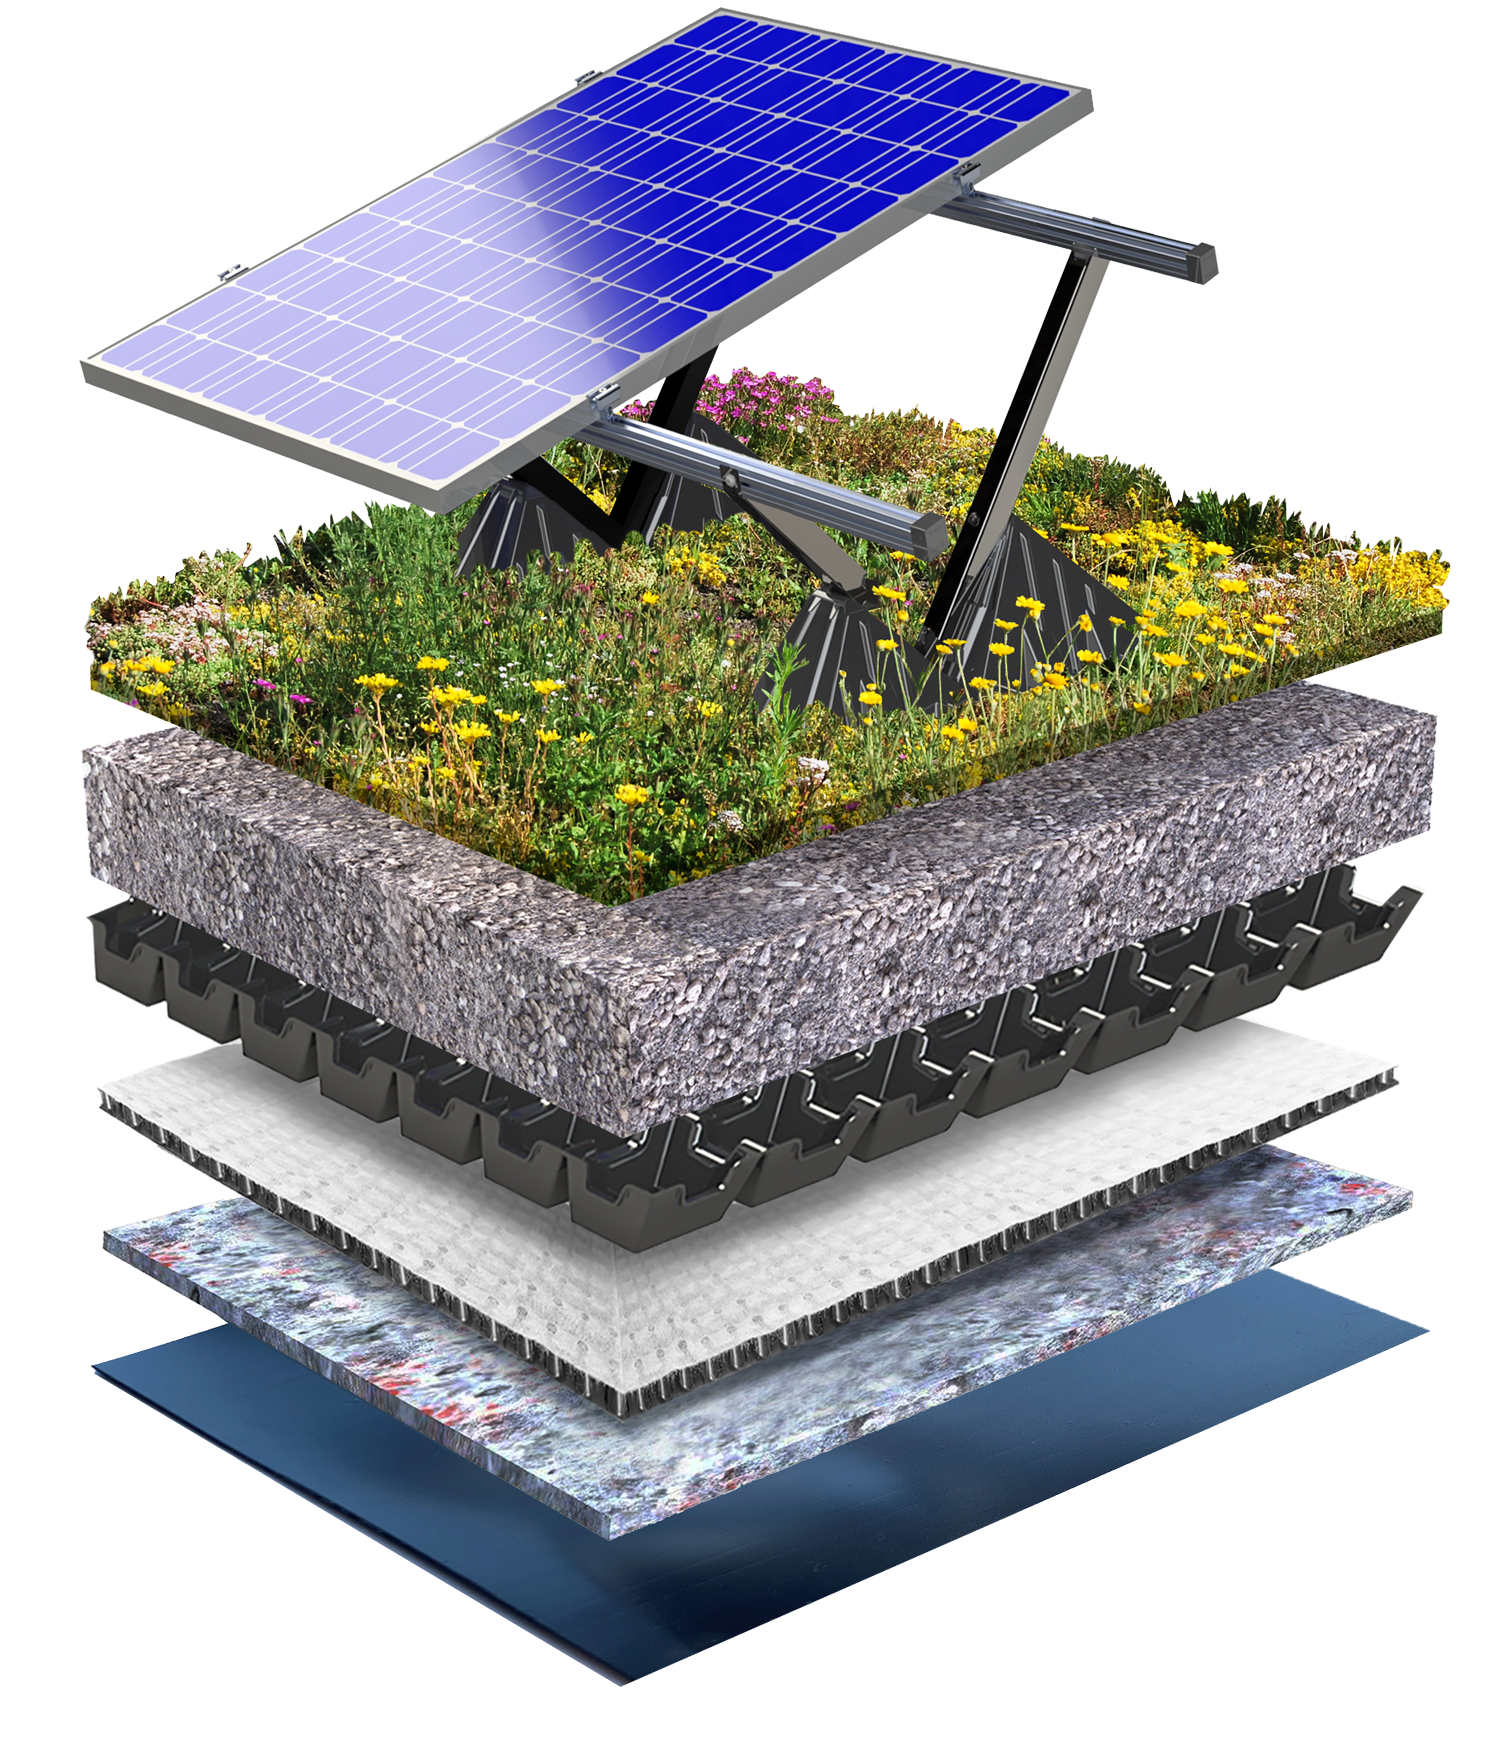 Systeemopbouw Solar Biodiversdak 0-5 graden